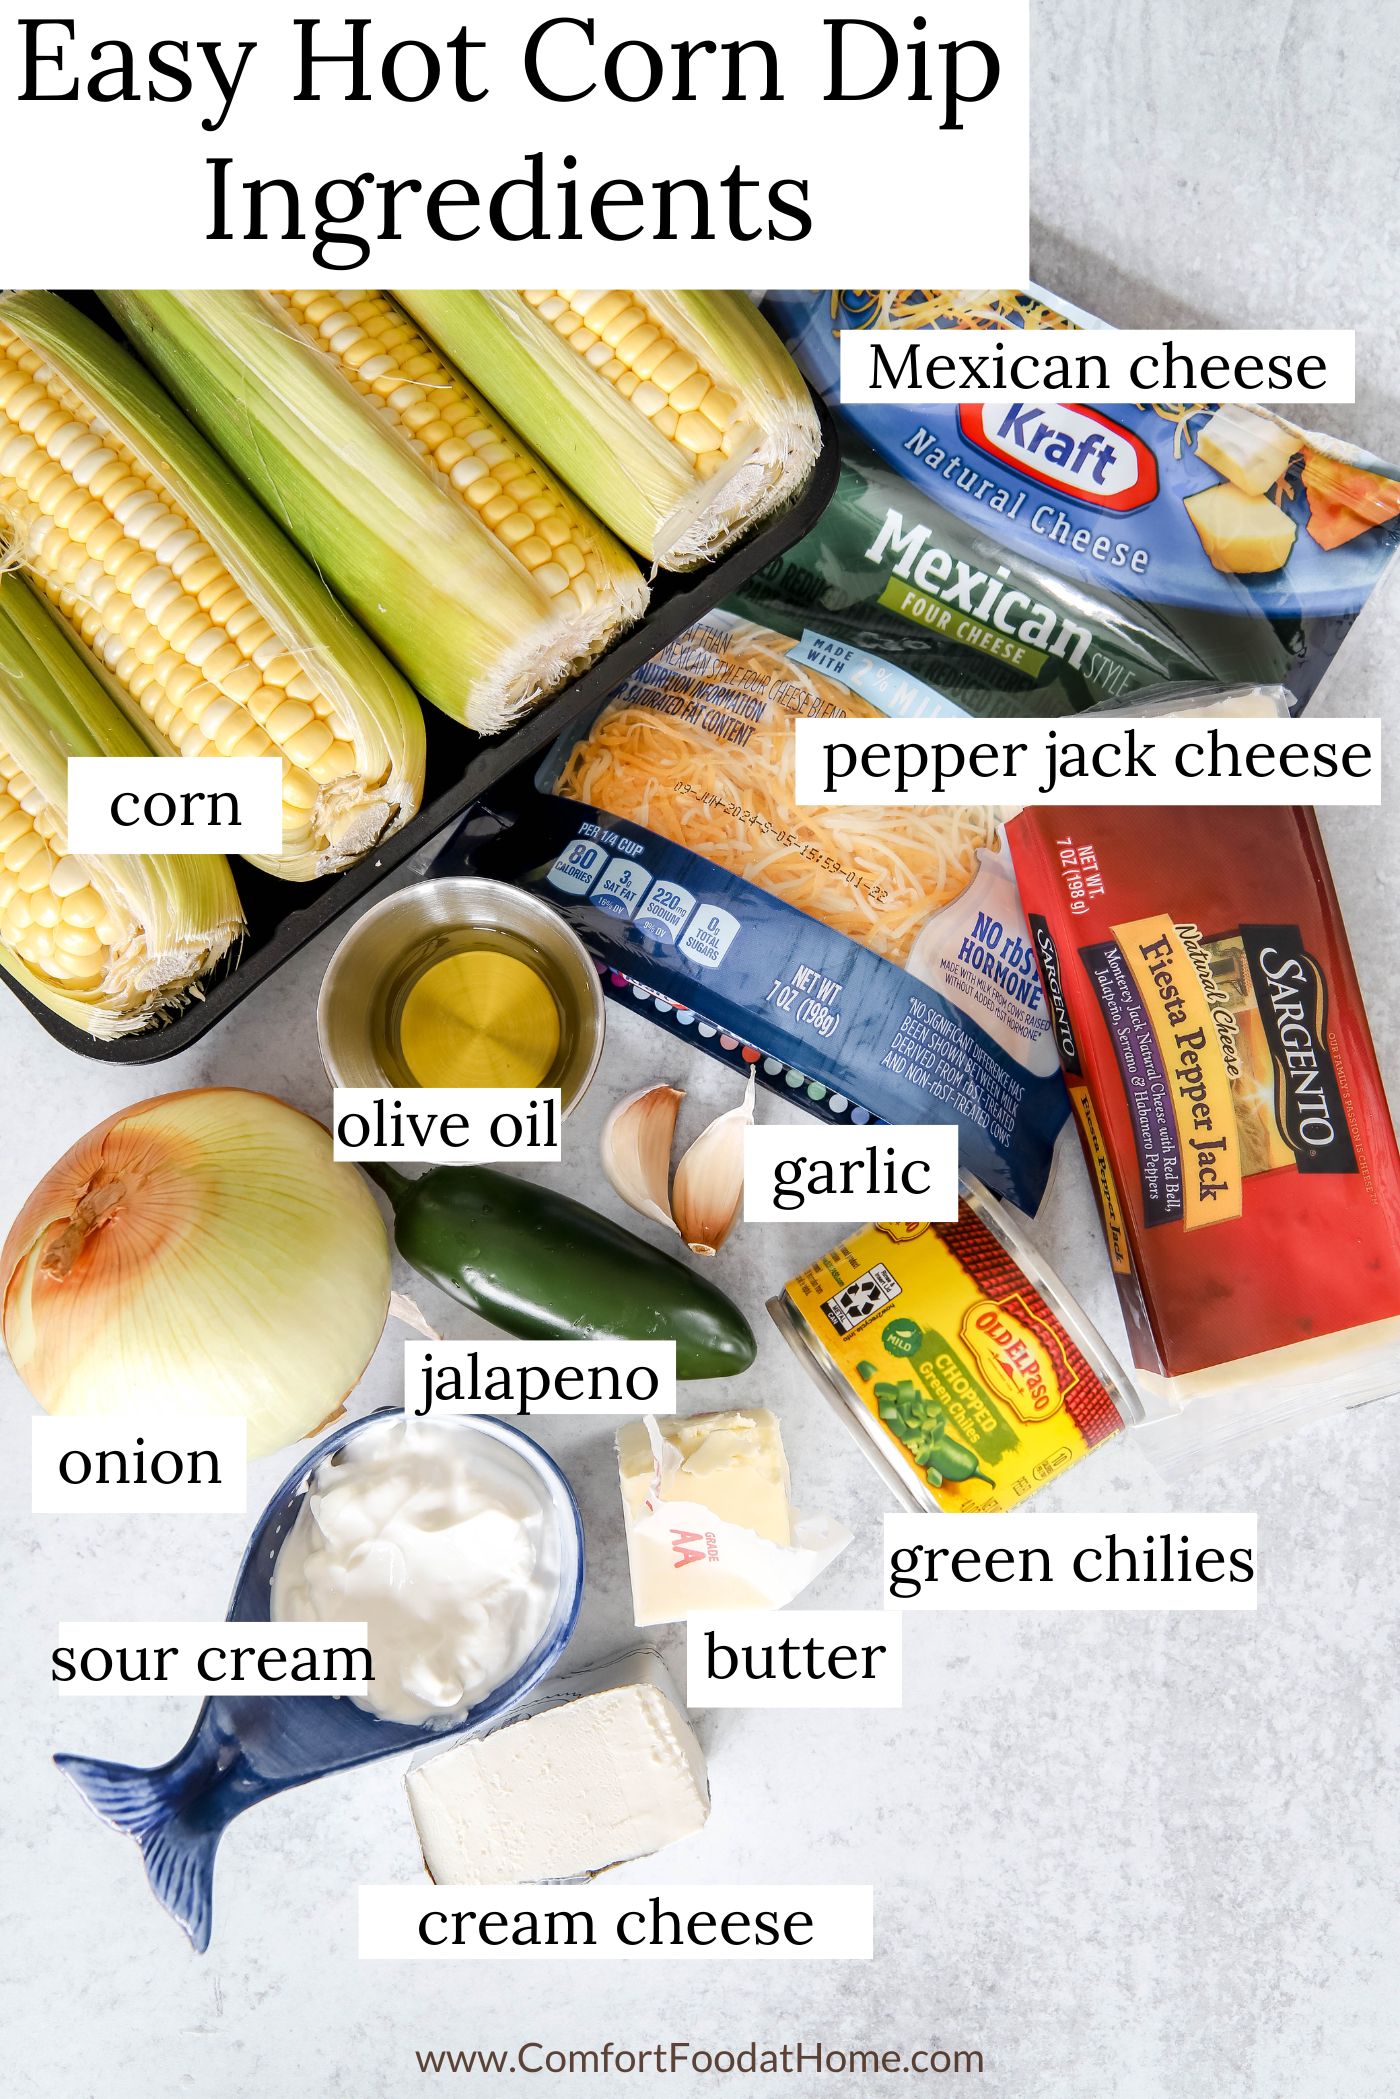 Easy Hot Corn Dip Ingredients